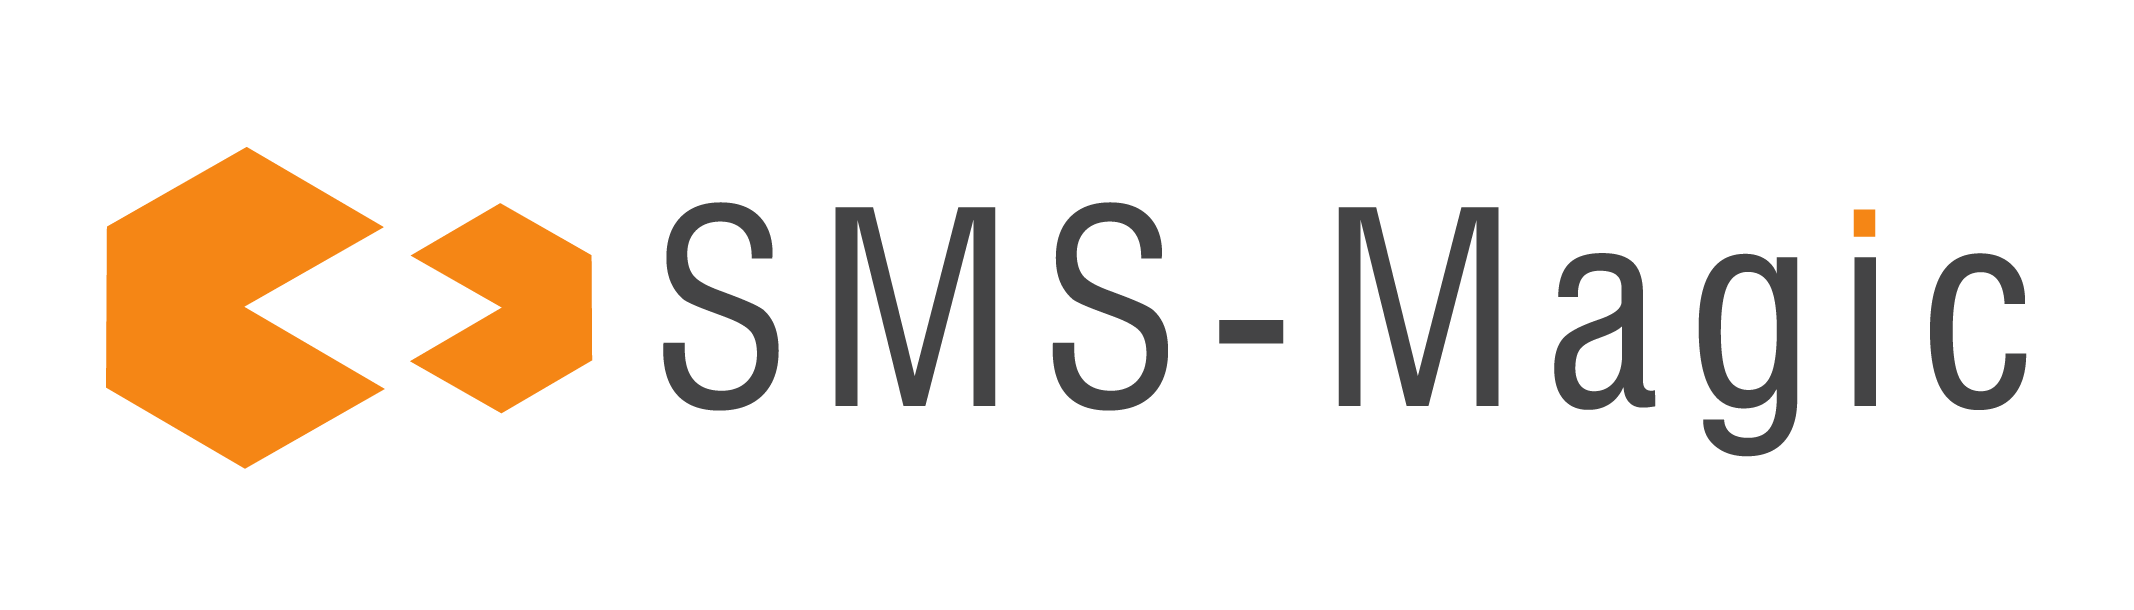 SMS Magic Logo Open file for dark bg 3 2